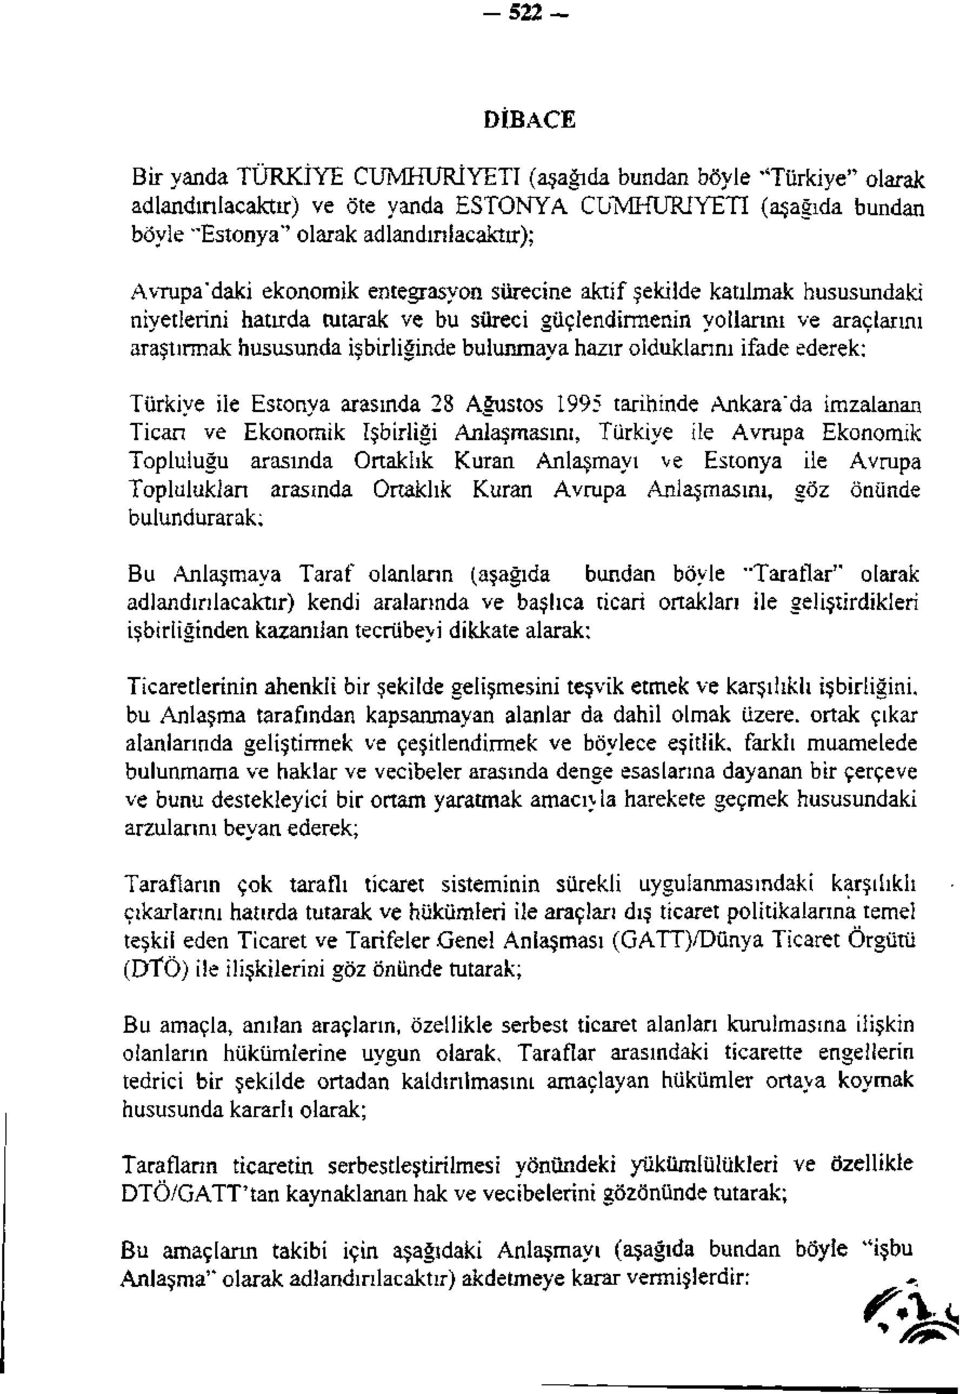 bulunmaya hazır olduklarını ifade ederek; Türkiye ile Estonya arasında 28 Ağustos 1995 tarihinde Ankara'da imzalanan Ticari ve Ekonomik İşbirliği Anlaşmasını, Türkiye ile Avrupa Ekonomik Topluluğu